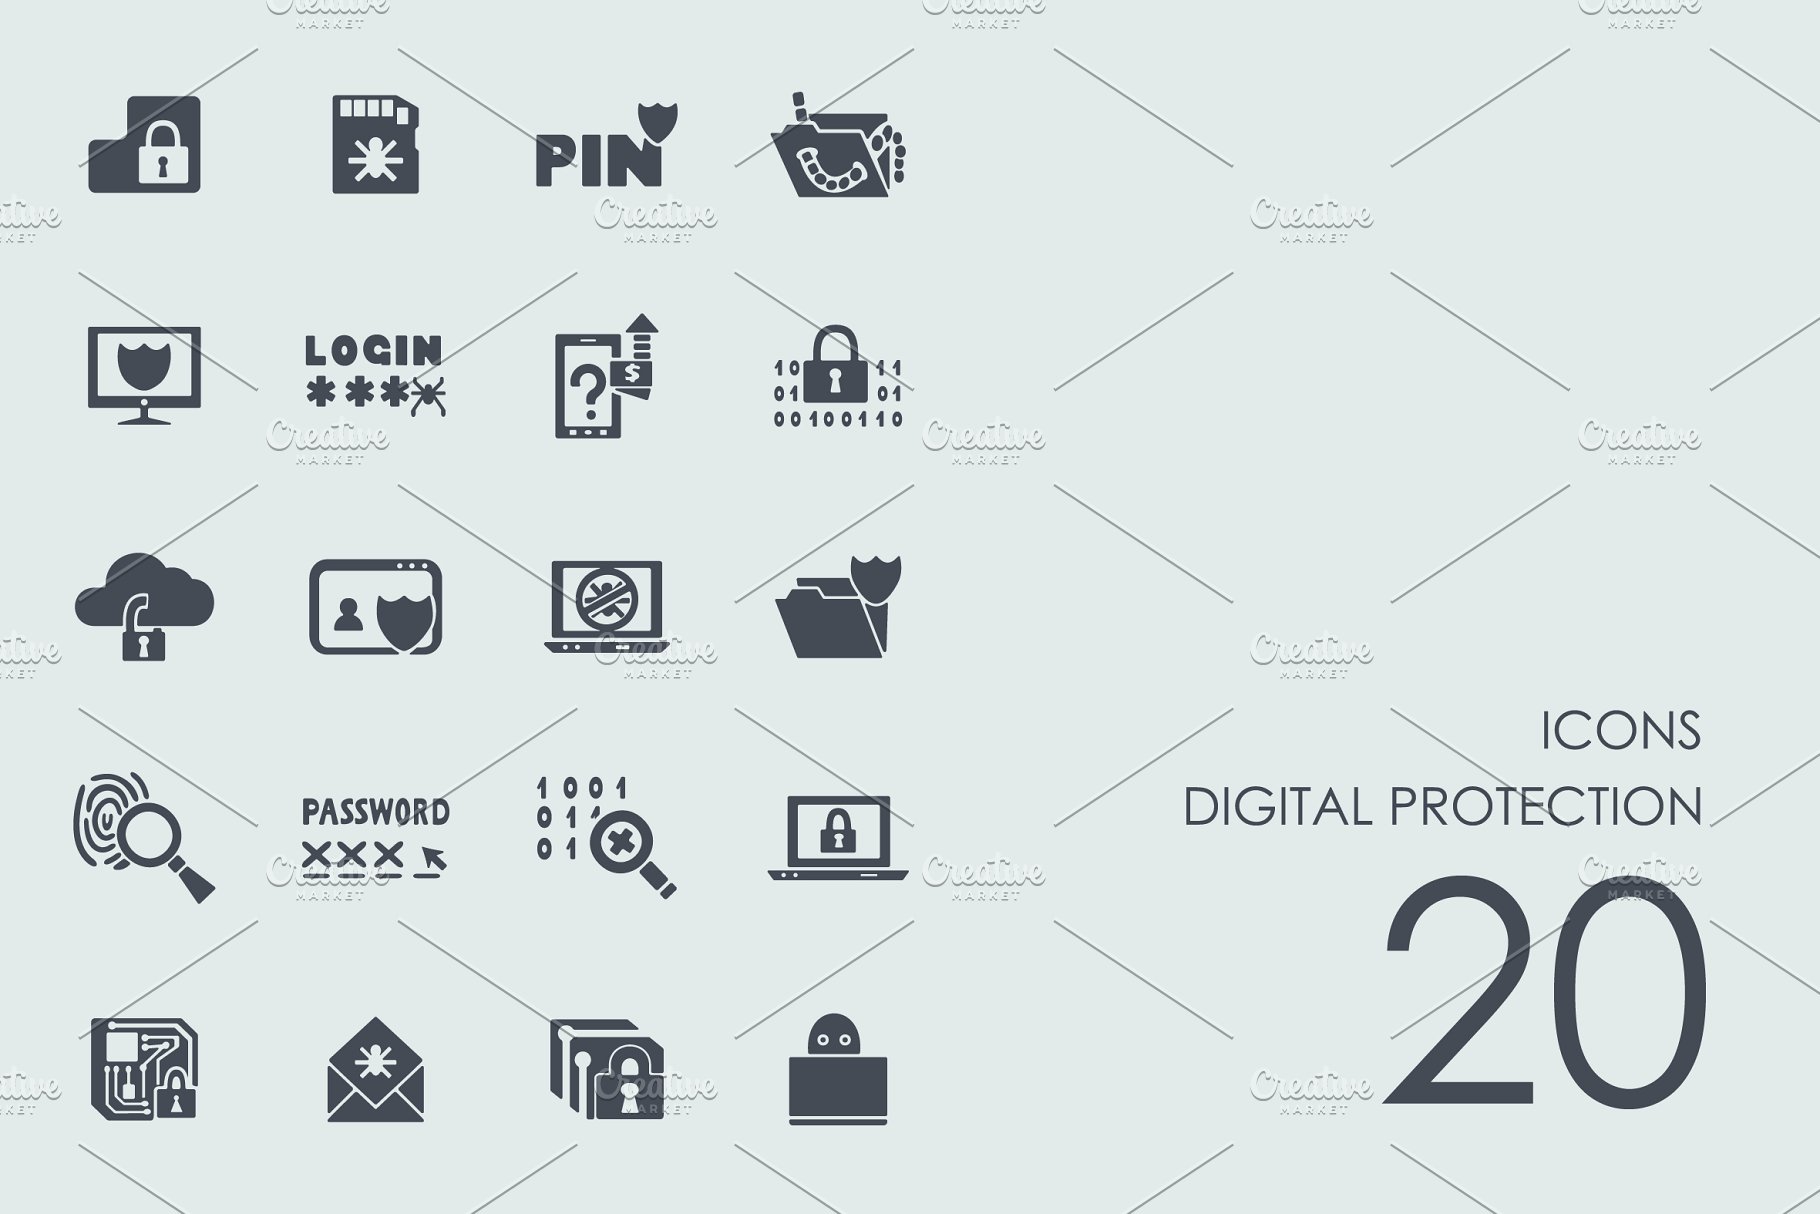 信息数据保护主题简笔画图标合集 Digital protection icons插图